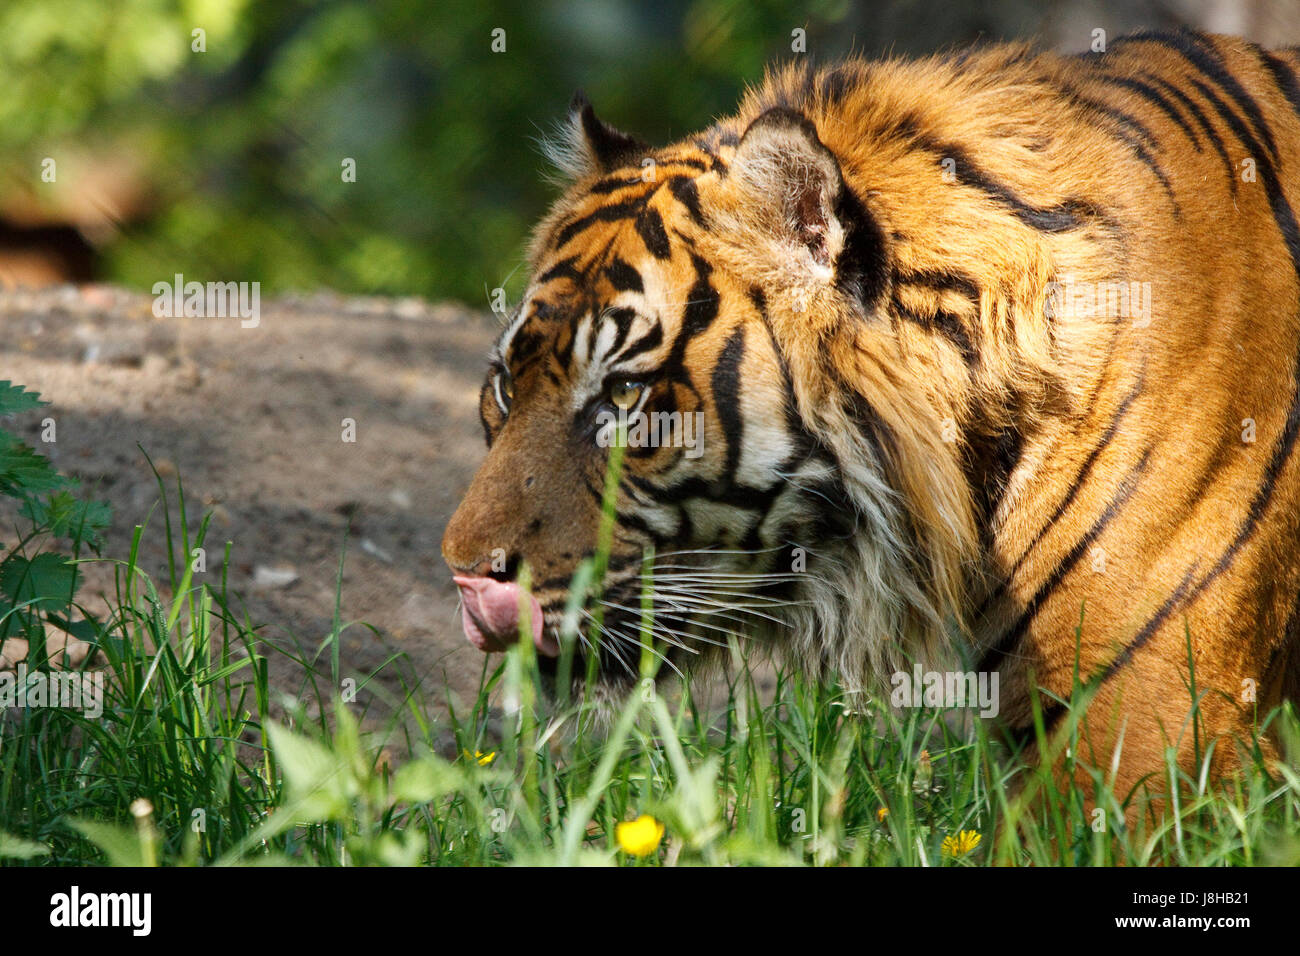 Big cat, félin prédateur, chat, tigre, panthère, predator, danger, l'animal, Banque D'Images